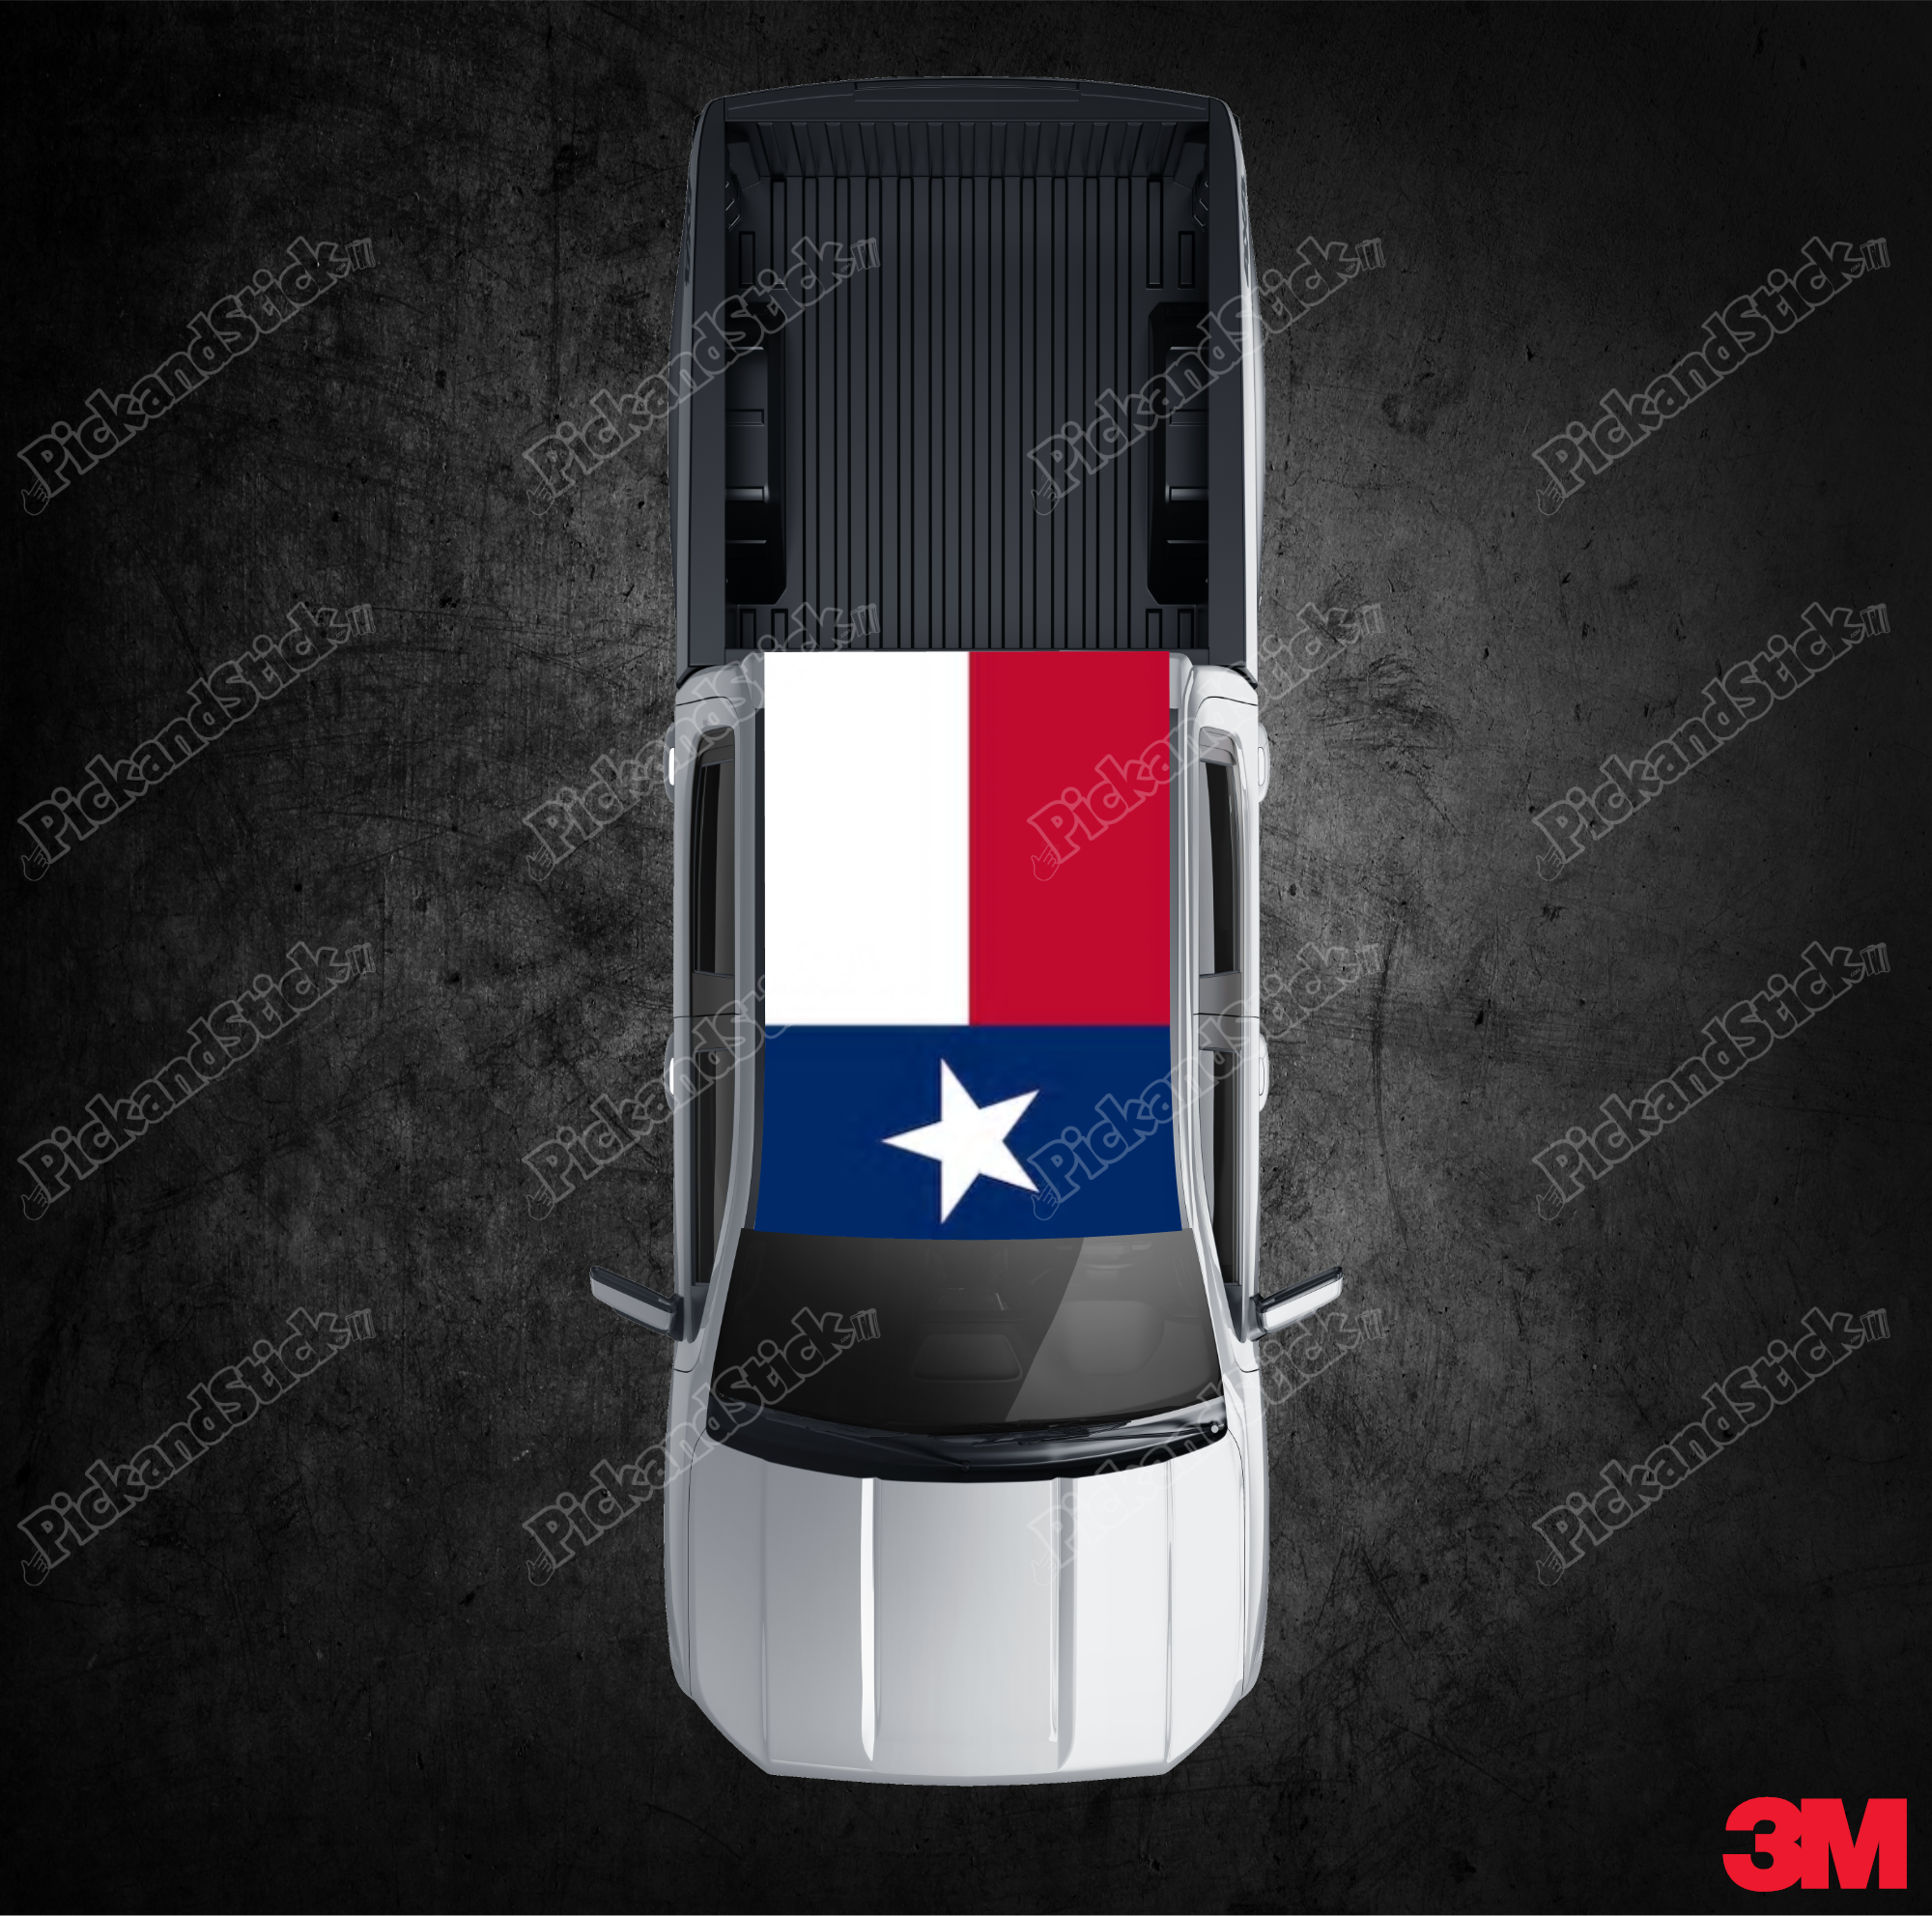 Roof Wrap Texas Flag - PickandStickcom